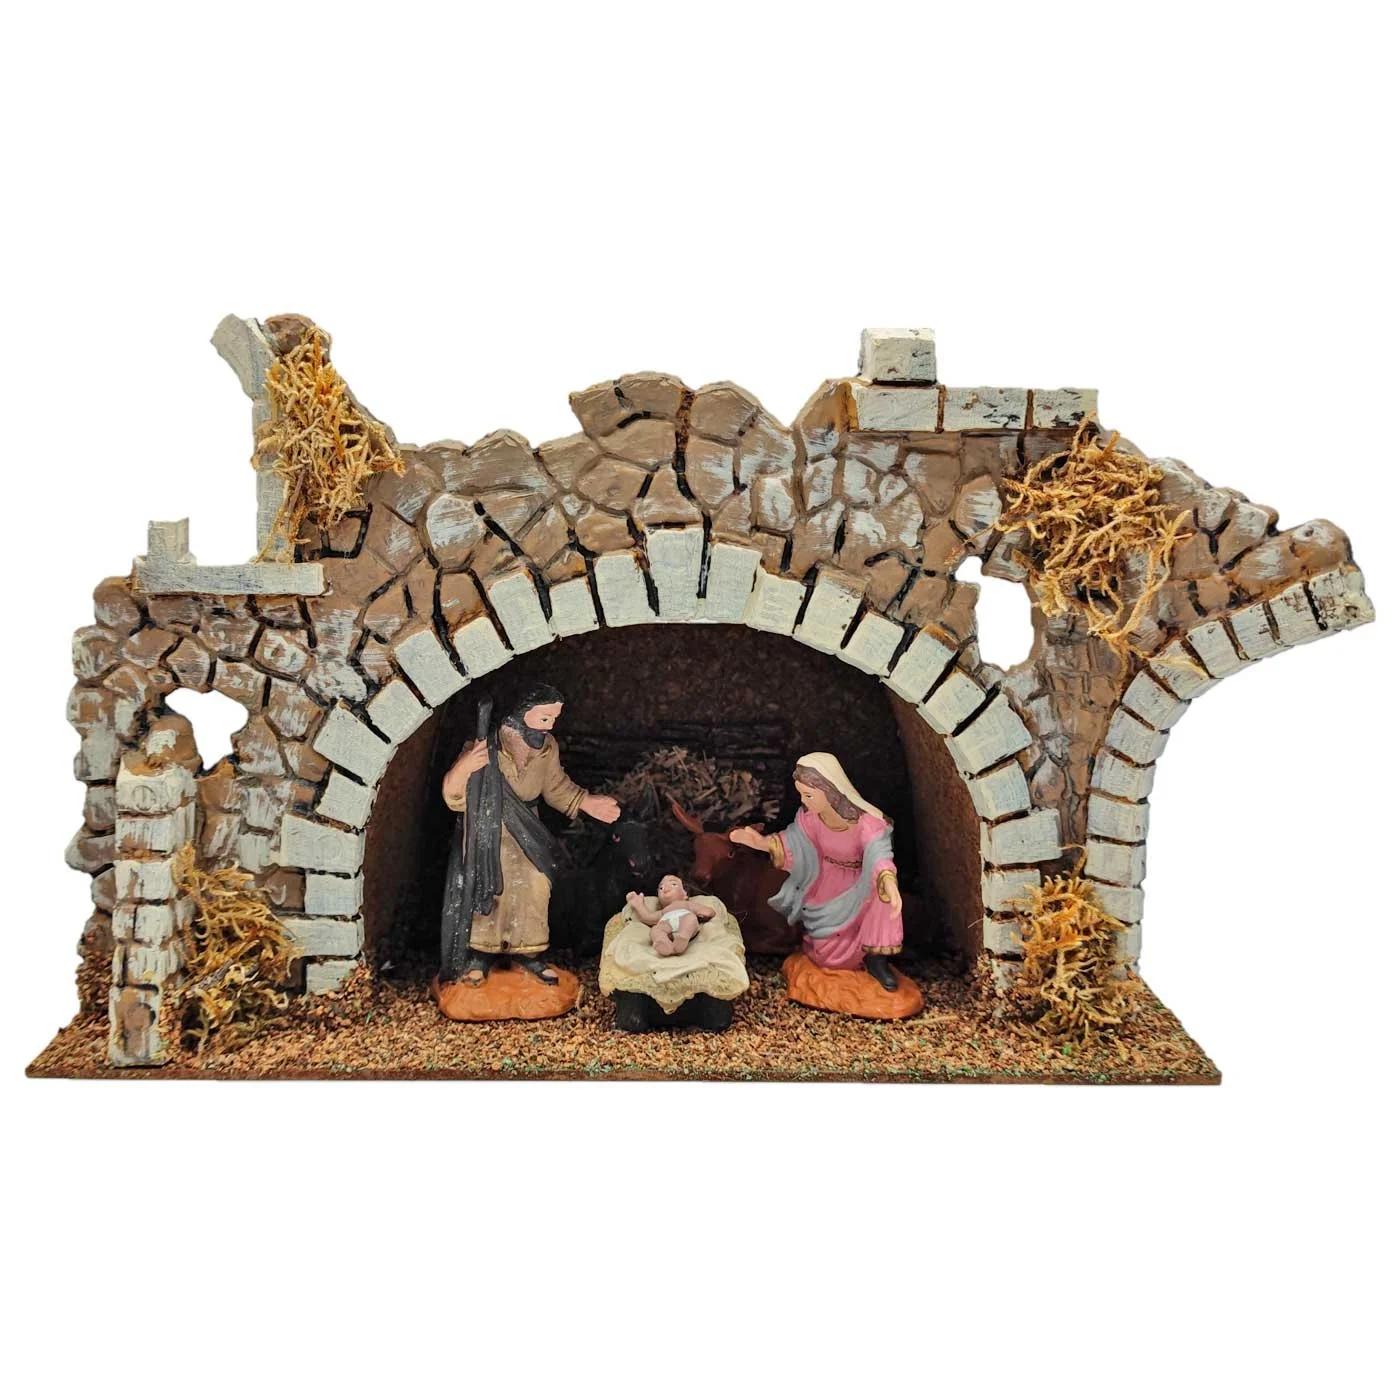 decoración de Navidad Tradicional Cueva rústica 15 x 26,8 x 15 cm Portal Pesebre para Figuras Decorativas de belén navideño Oliver Art Corcho y Resina 